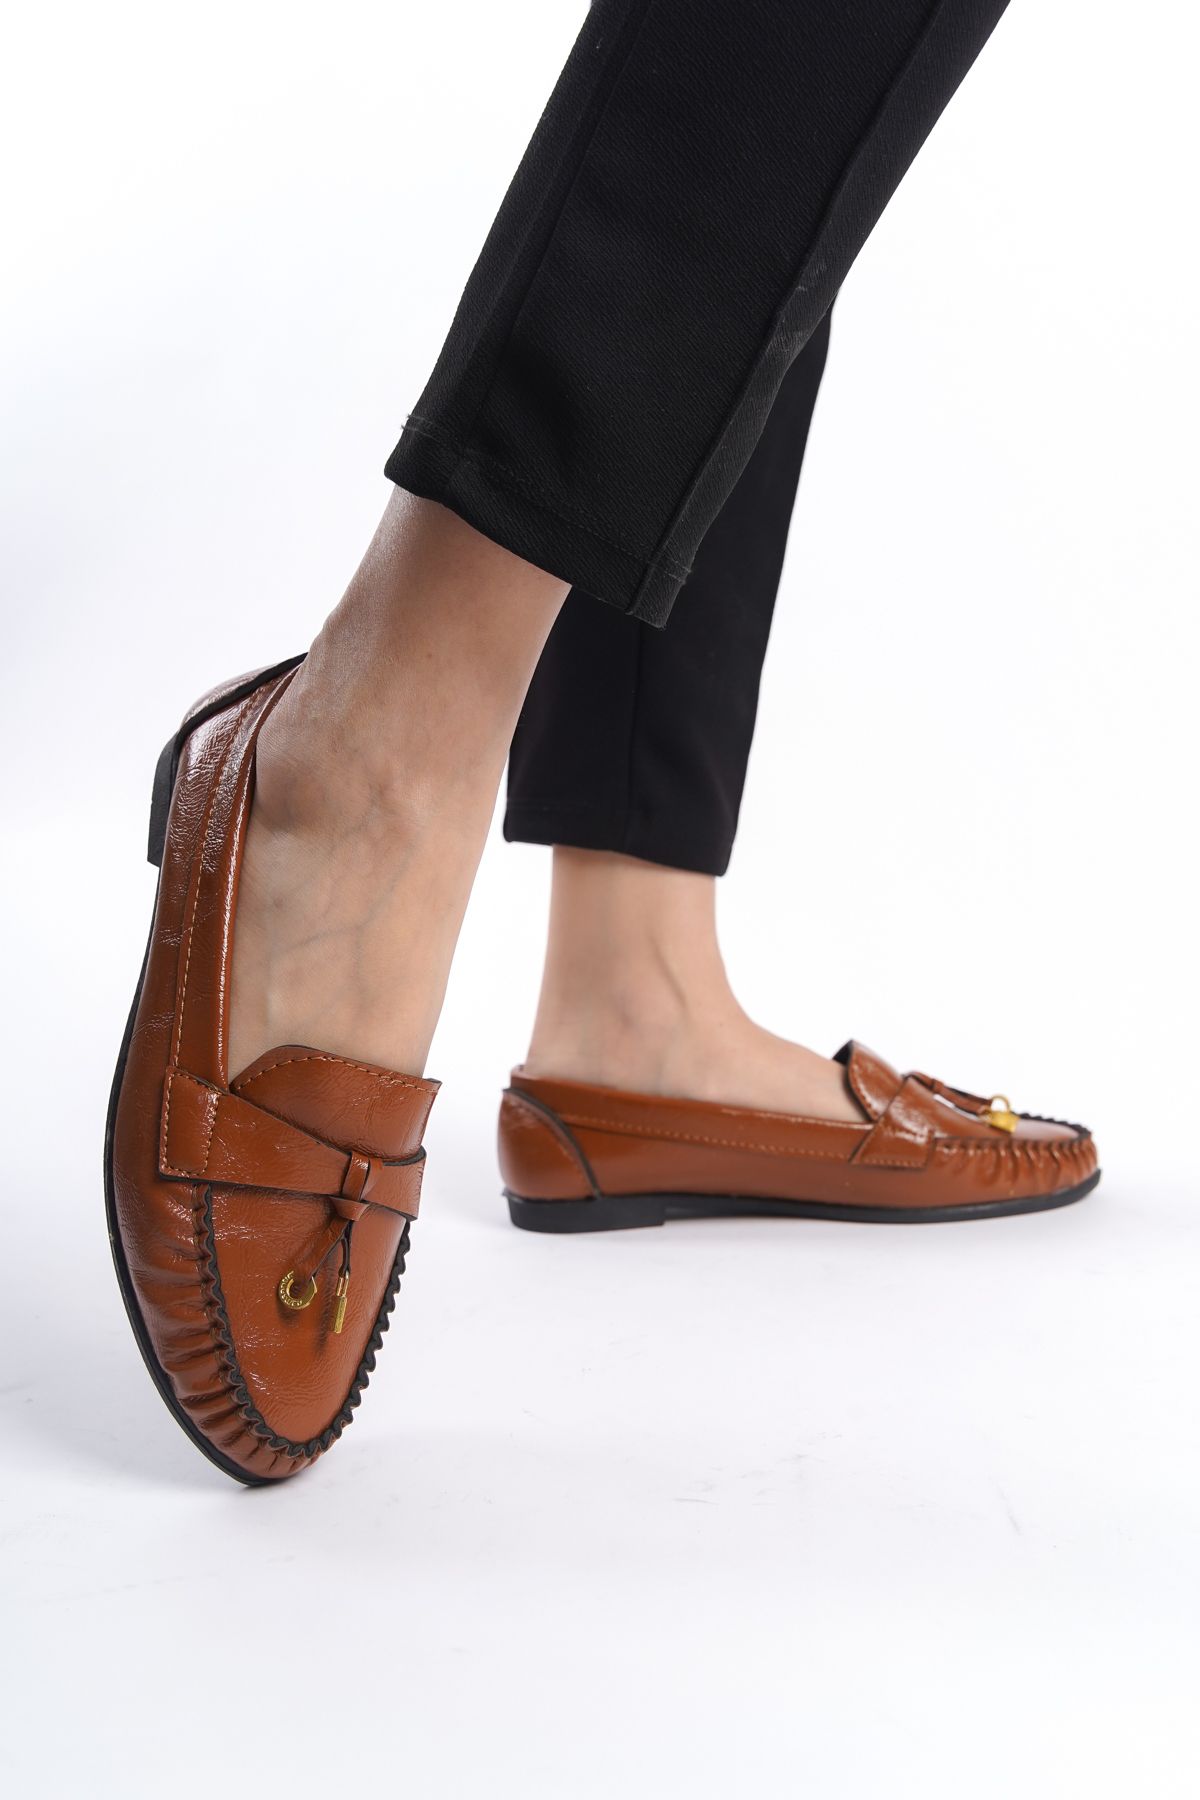 eformoda by emre yılmaz Kahverengi Kadın Günlük Rahat Tokalı Casual Klasik Ayakkabı Babet LRS02